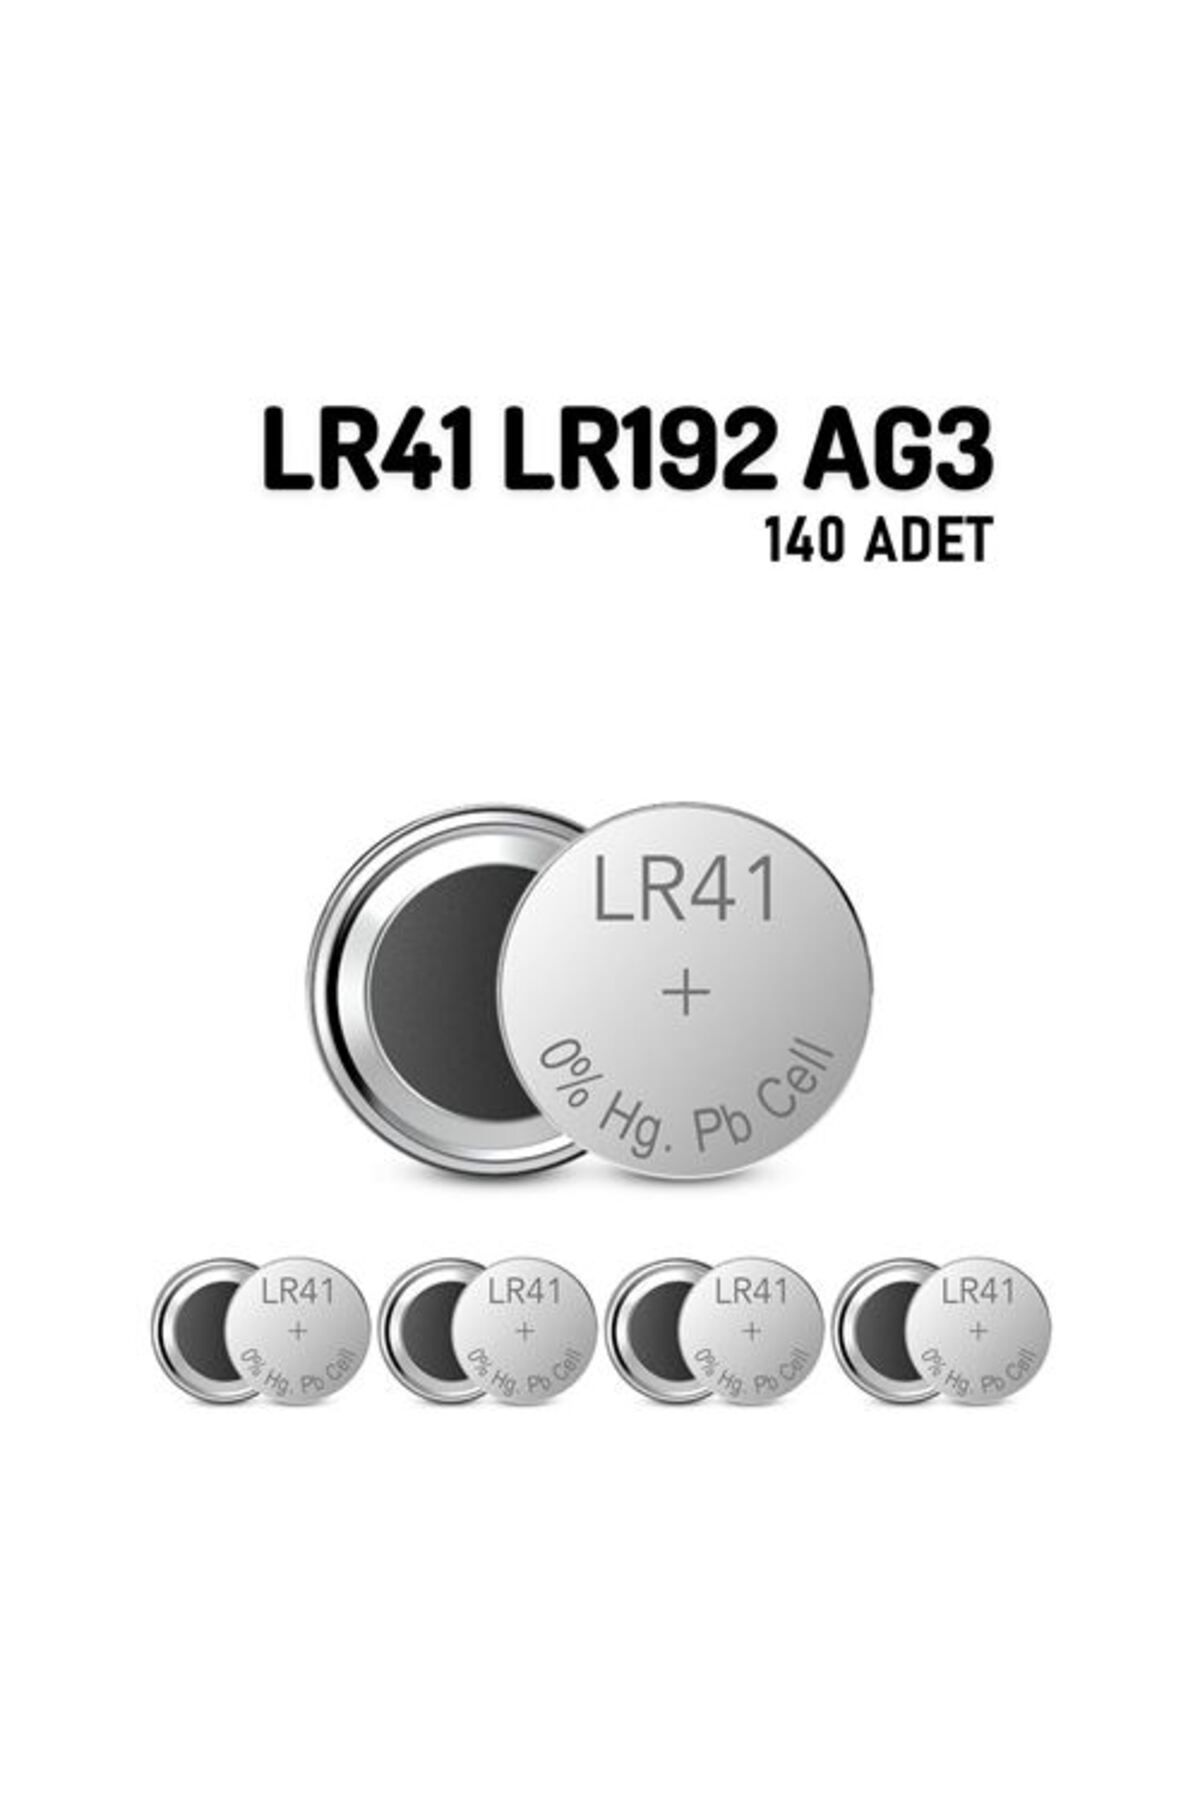 Transformacion 100+40 ADET LR41 LR192 AG3 1.55V 10 Adet Alkaline Pil